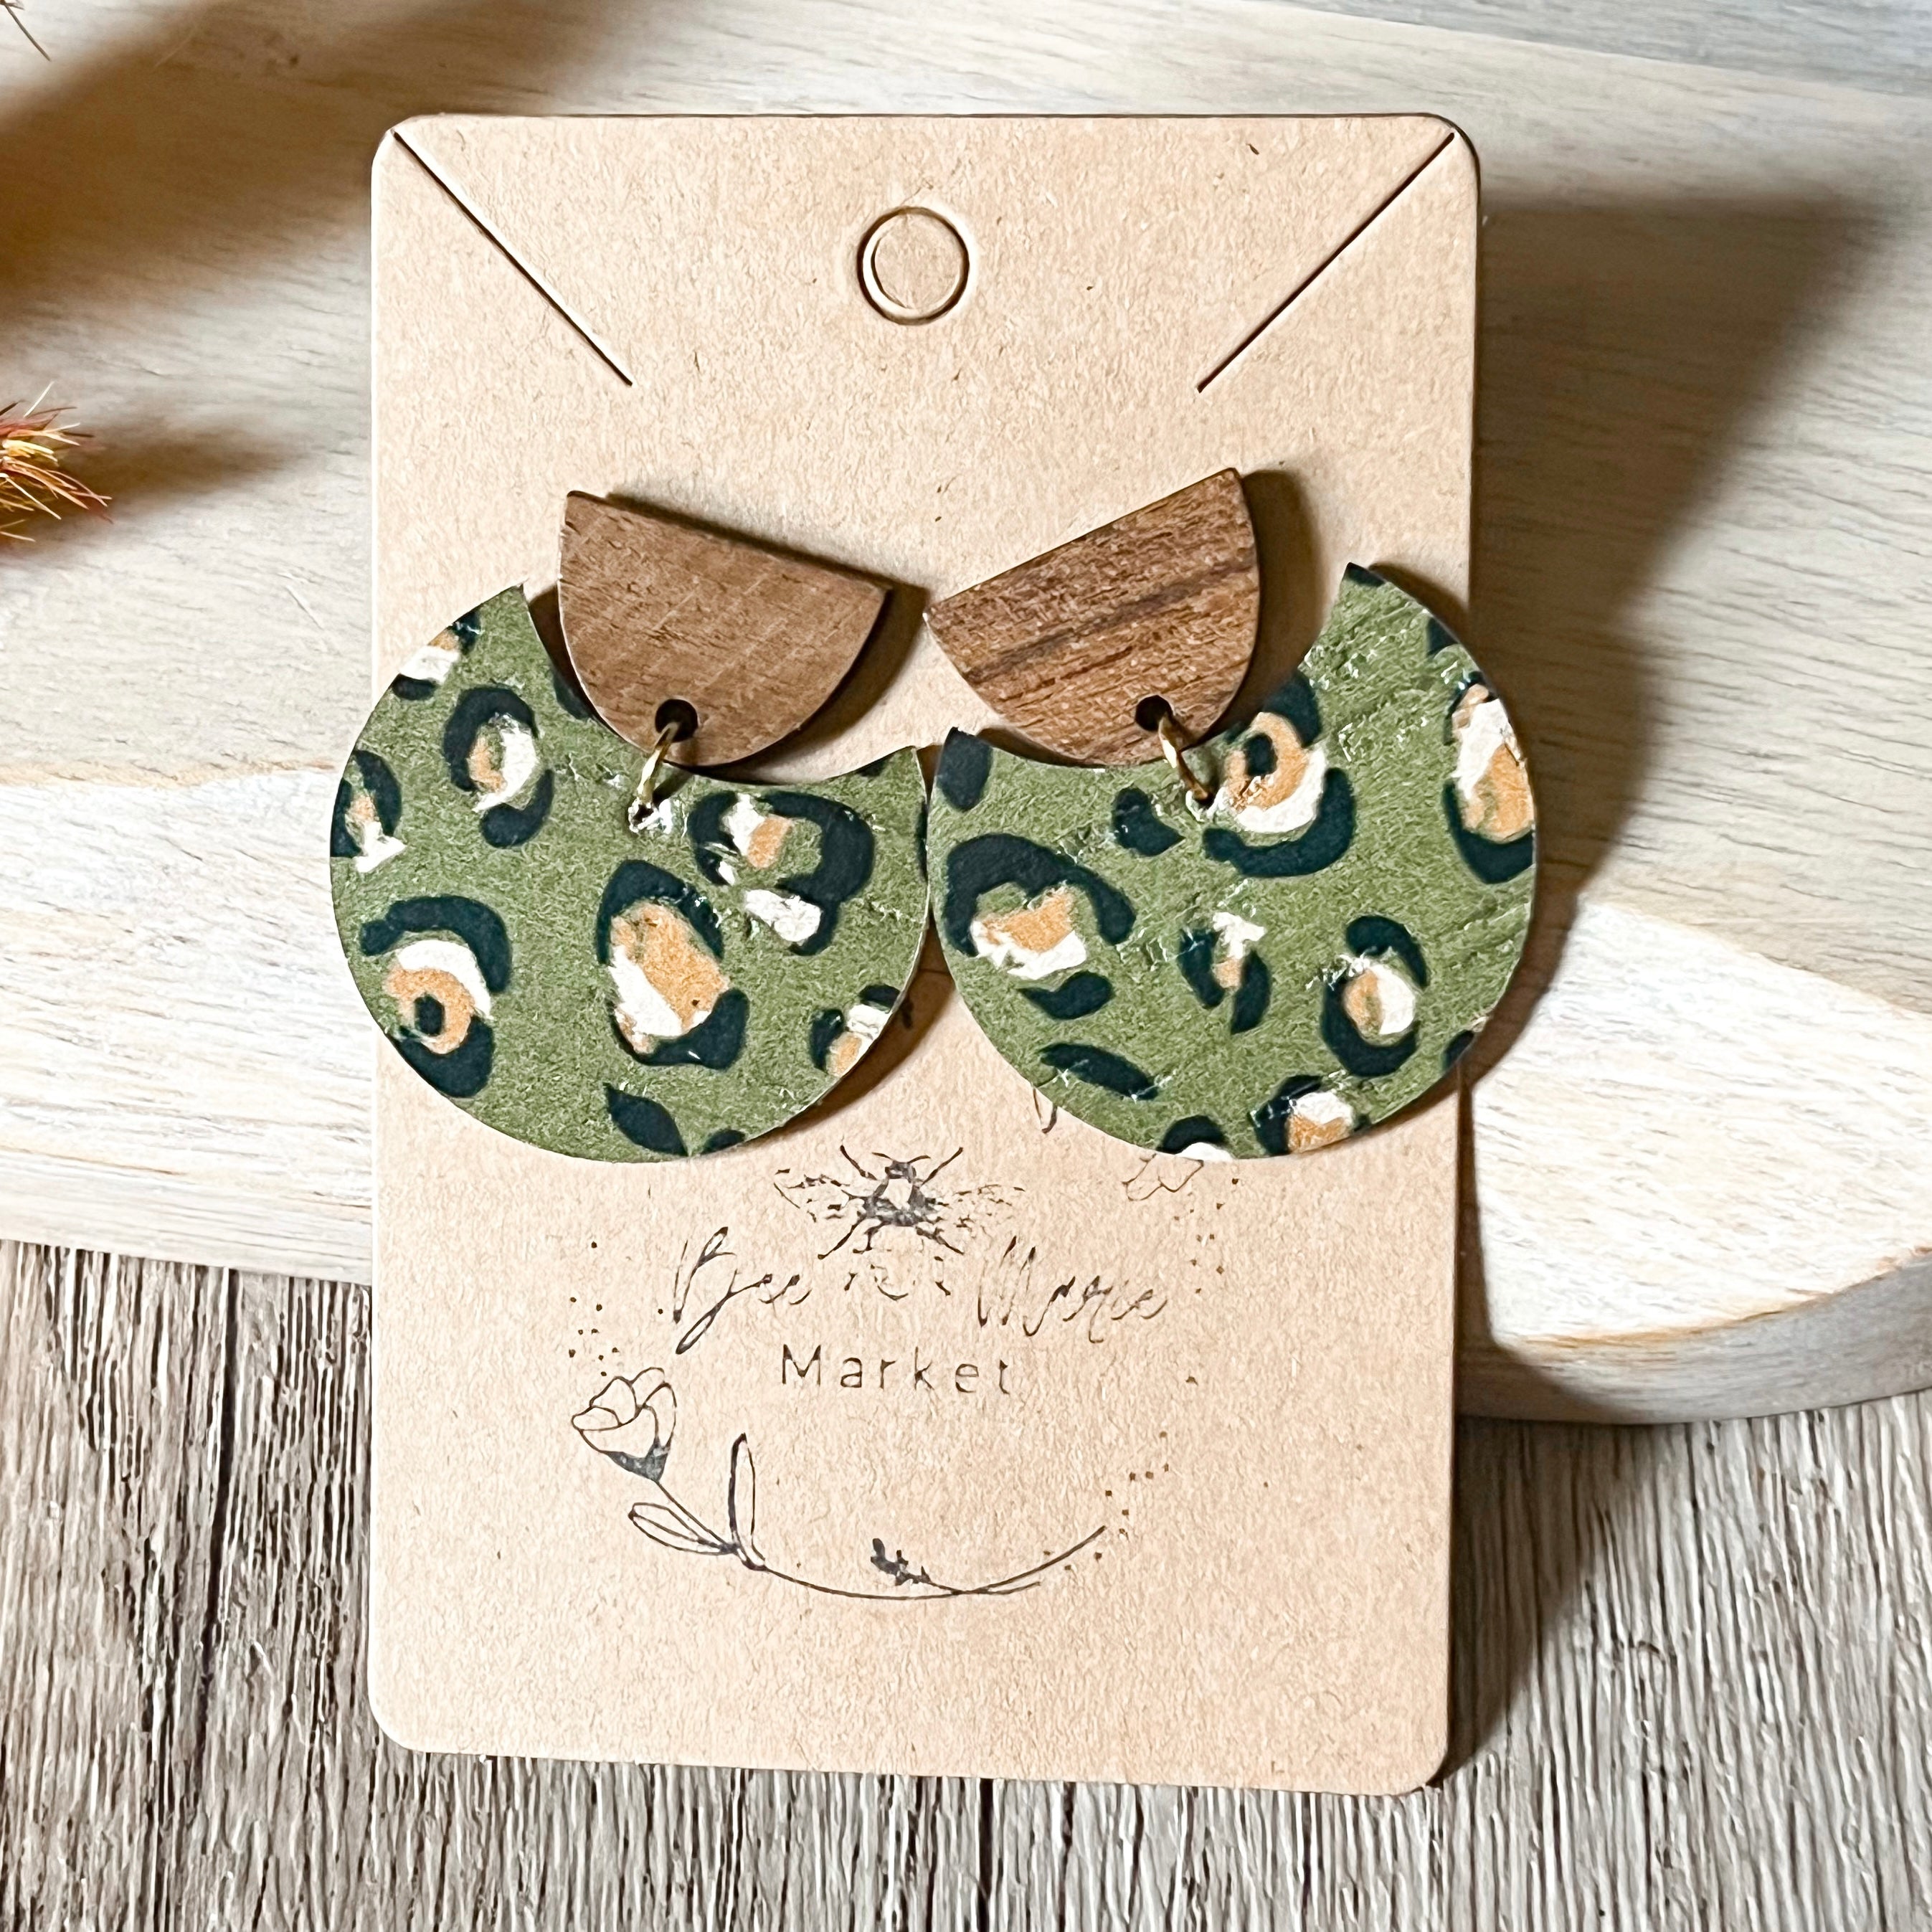 Olive Green Leopard Spot Leather Earrings